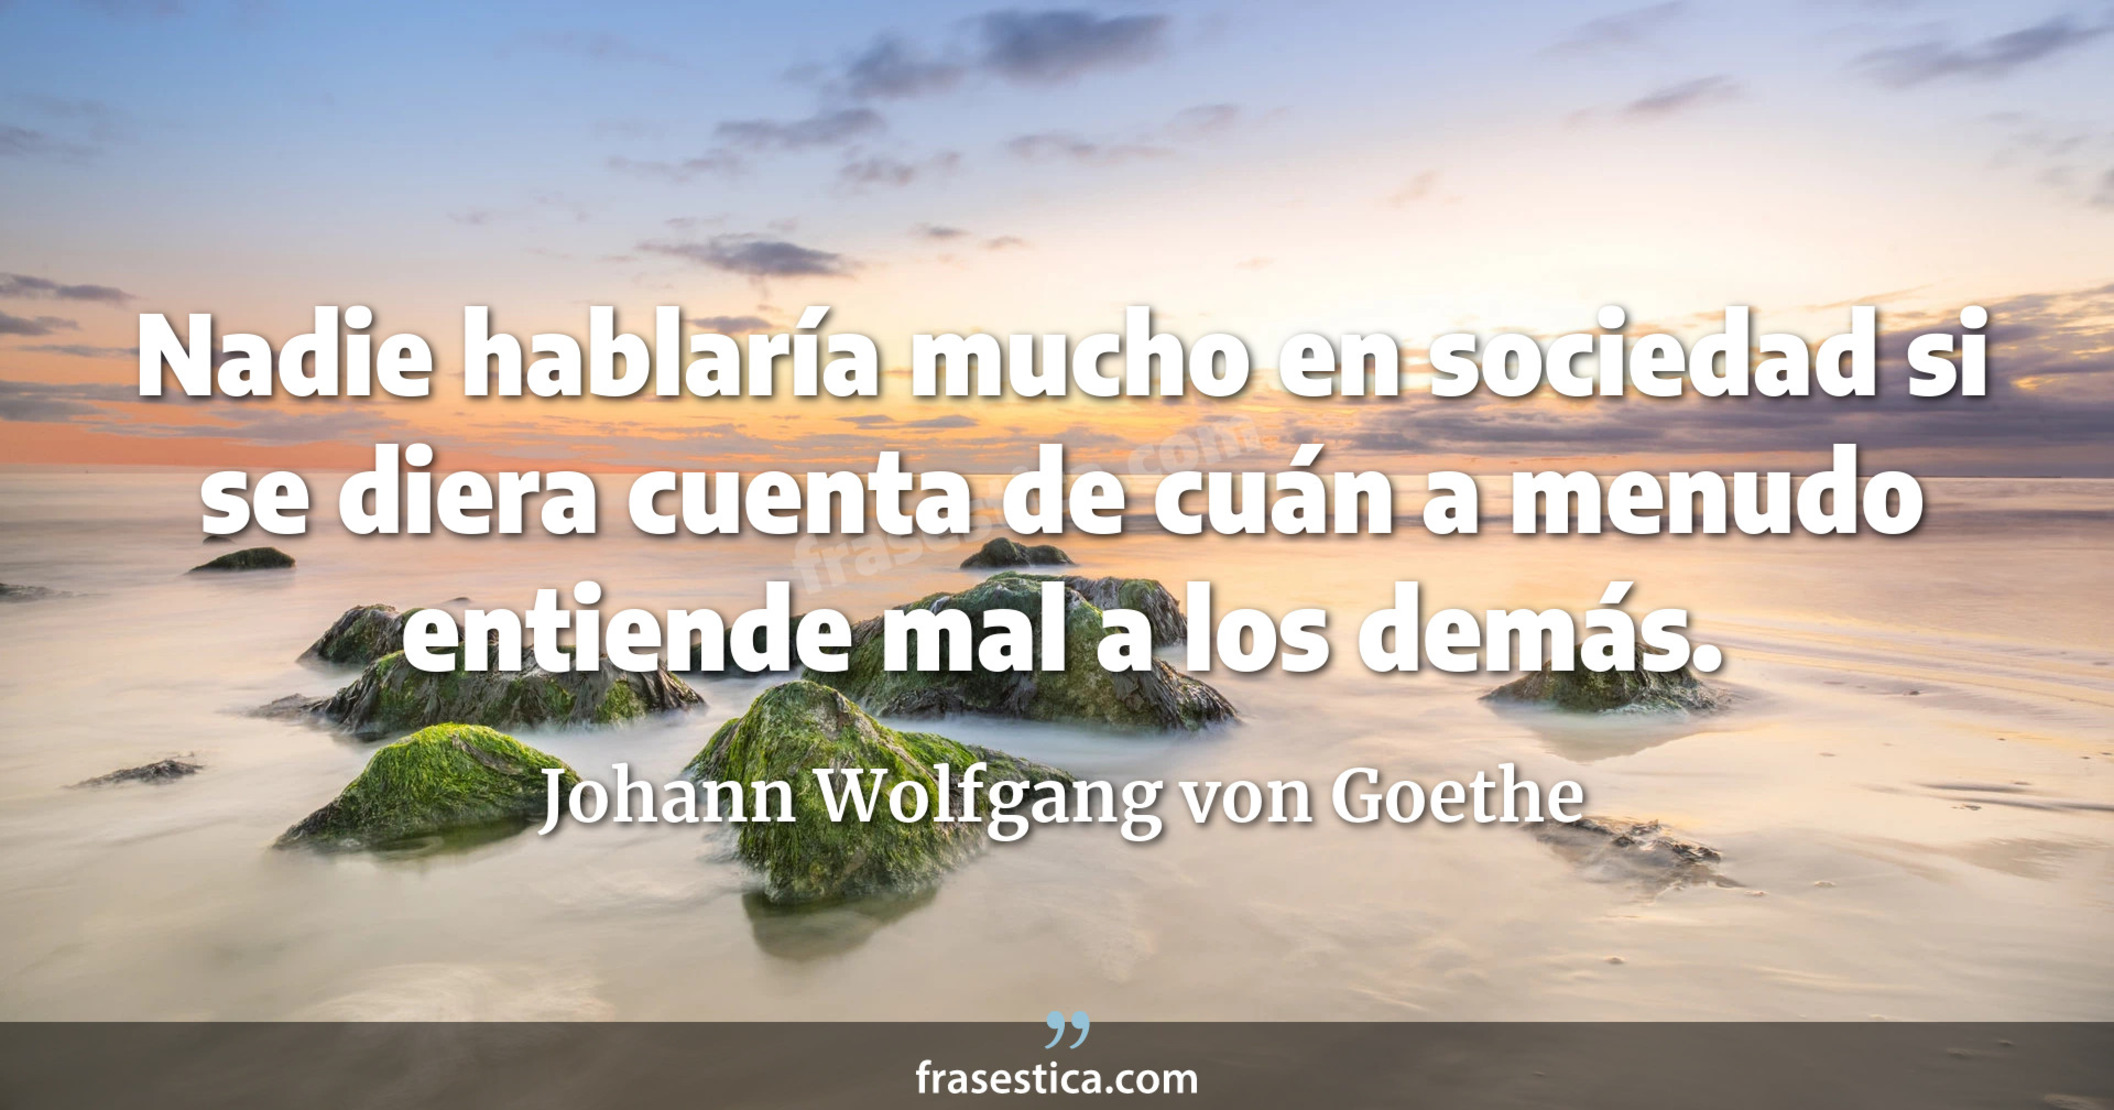 Nadie hablaría mucho en sociedad si se diera cuenta de cuán a menudo entiende mal a los demás. - Johann Wolfgang von Goethe